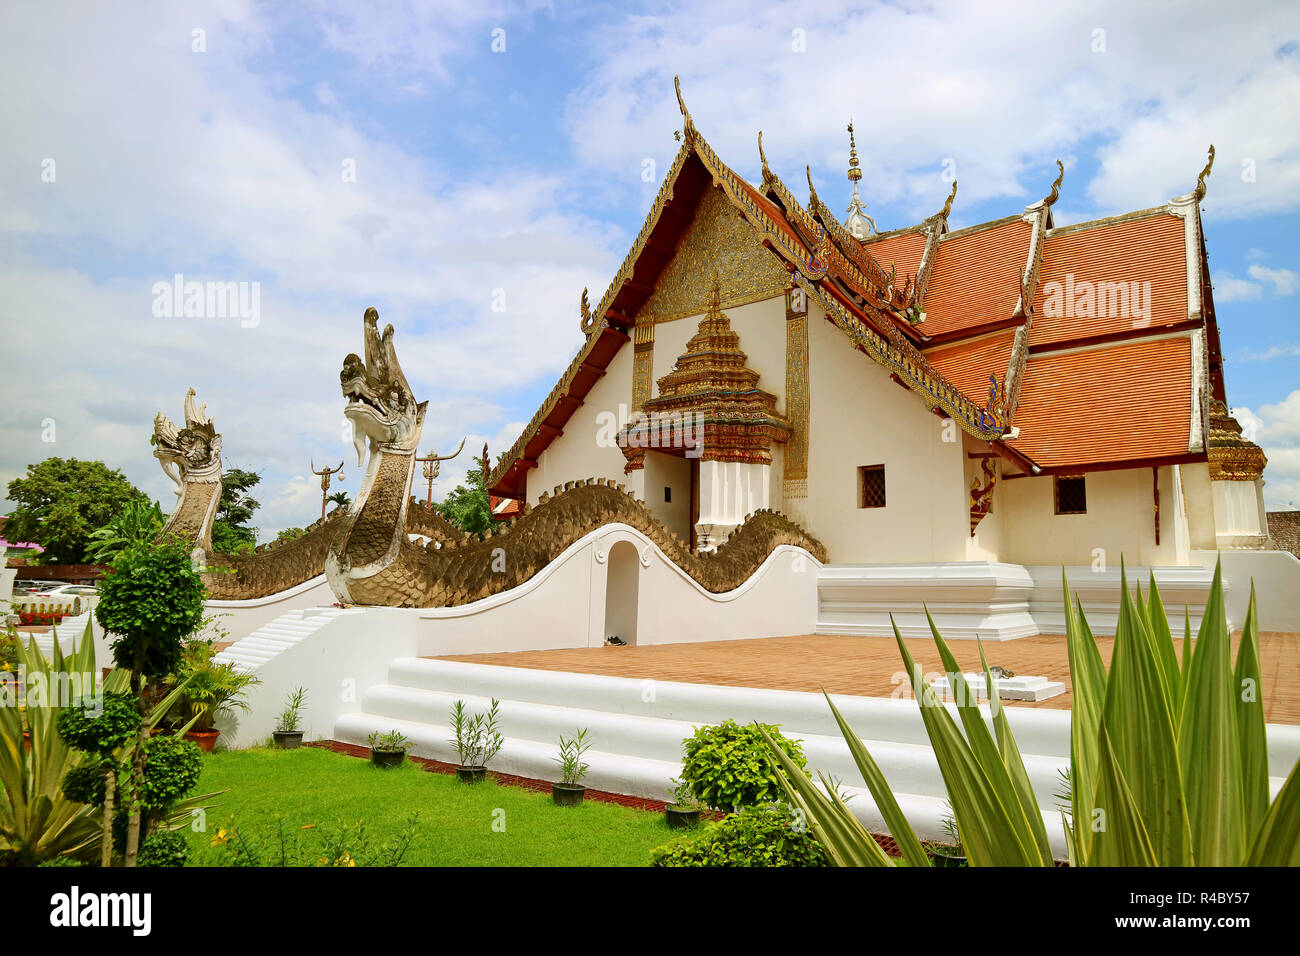 Wat Phumin Tempel, in denen die wichtigsten Gebäude verbindet Ubosot und Wiharn (Anbetung Halle und Ordination Halle), Historischen buddhistischen Tempel in Nan, Thailand Stockfoto